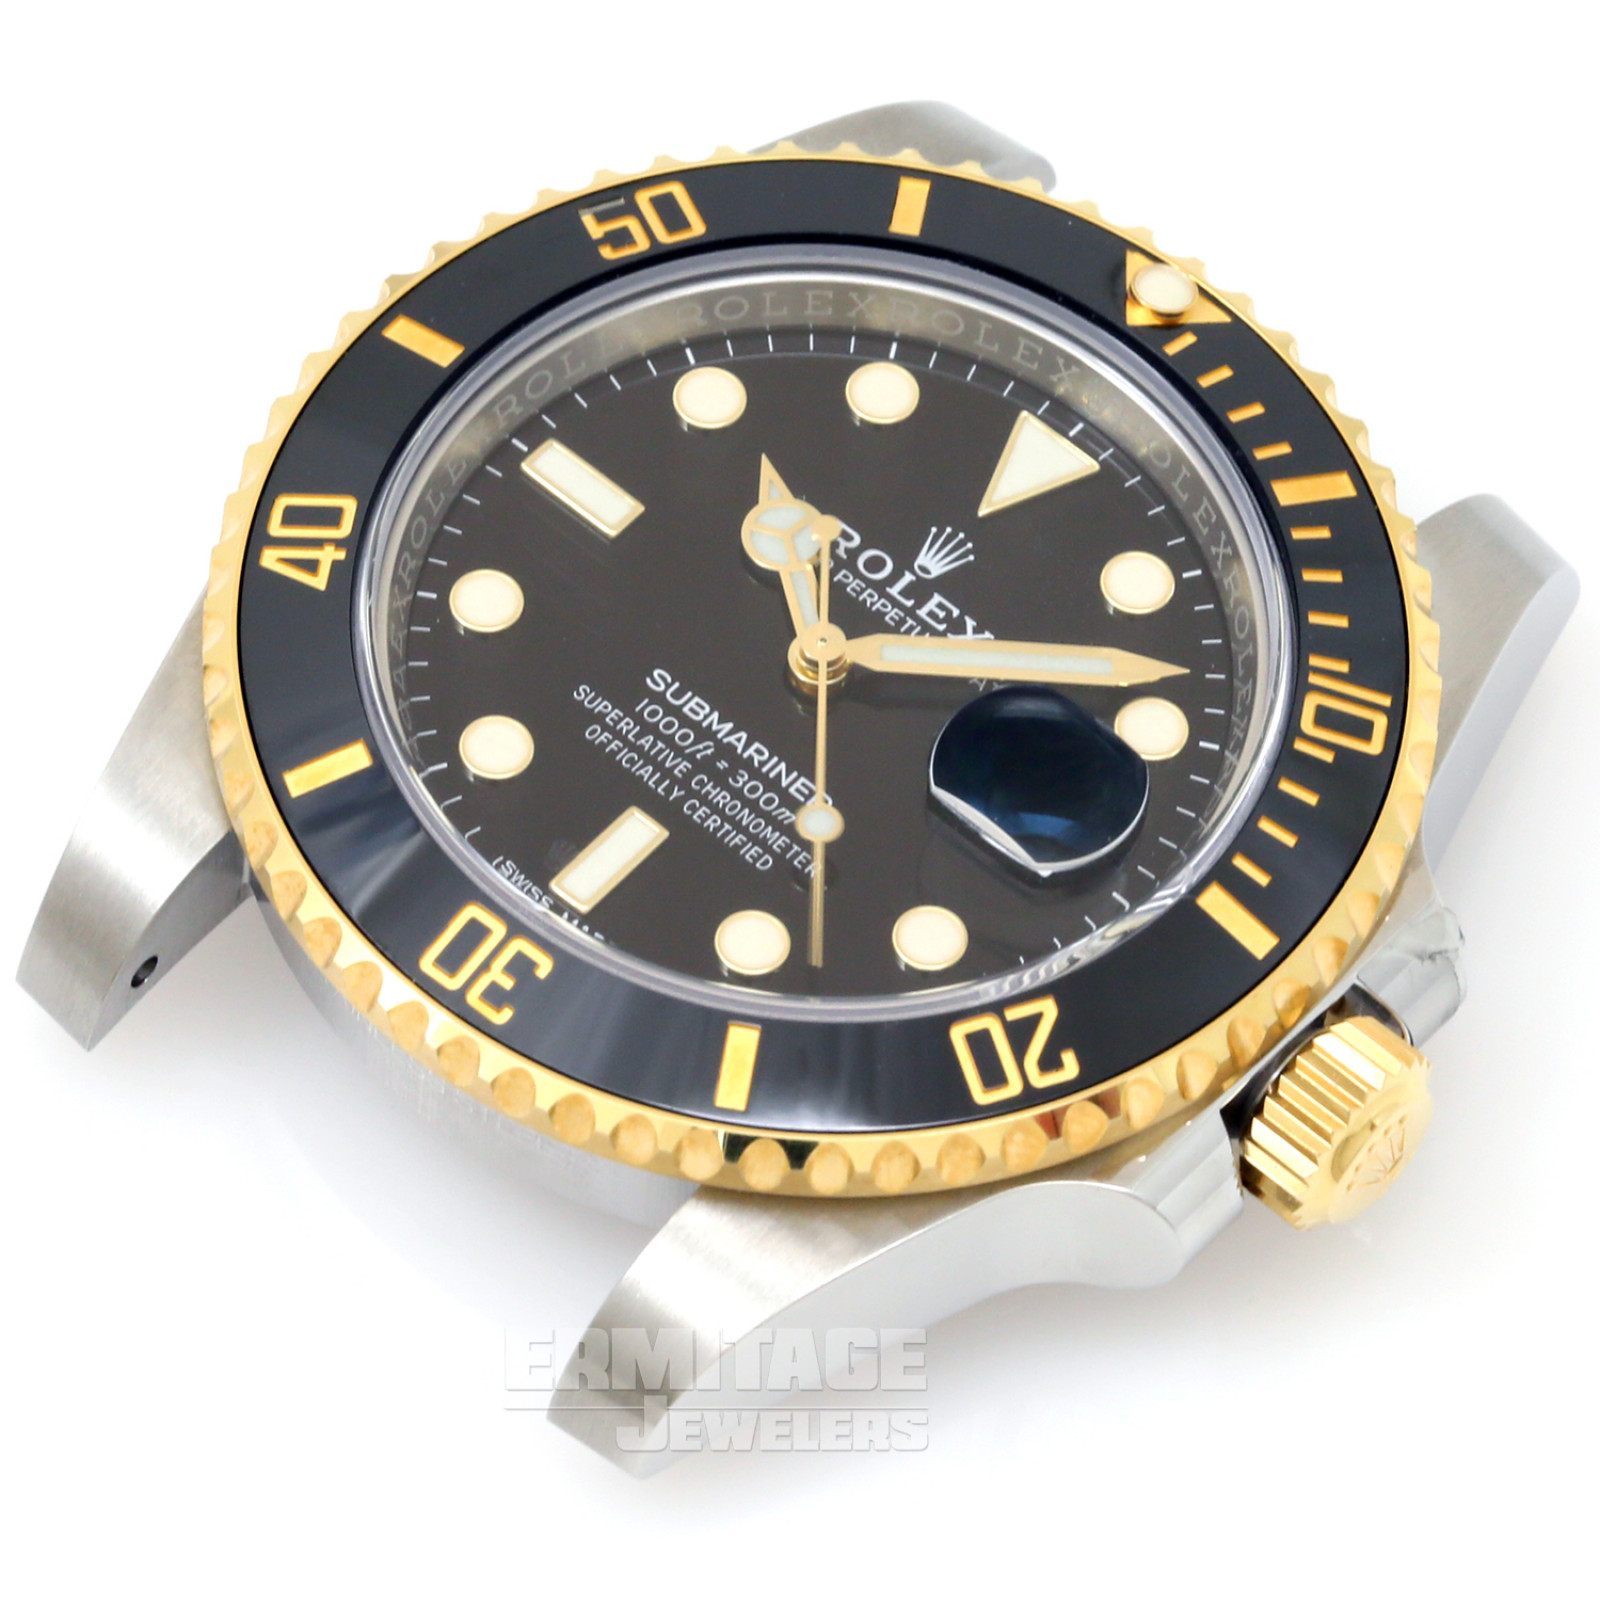 Rolex Submariner 116613 Black Dial